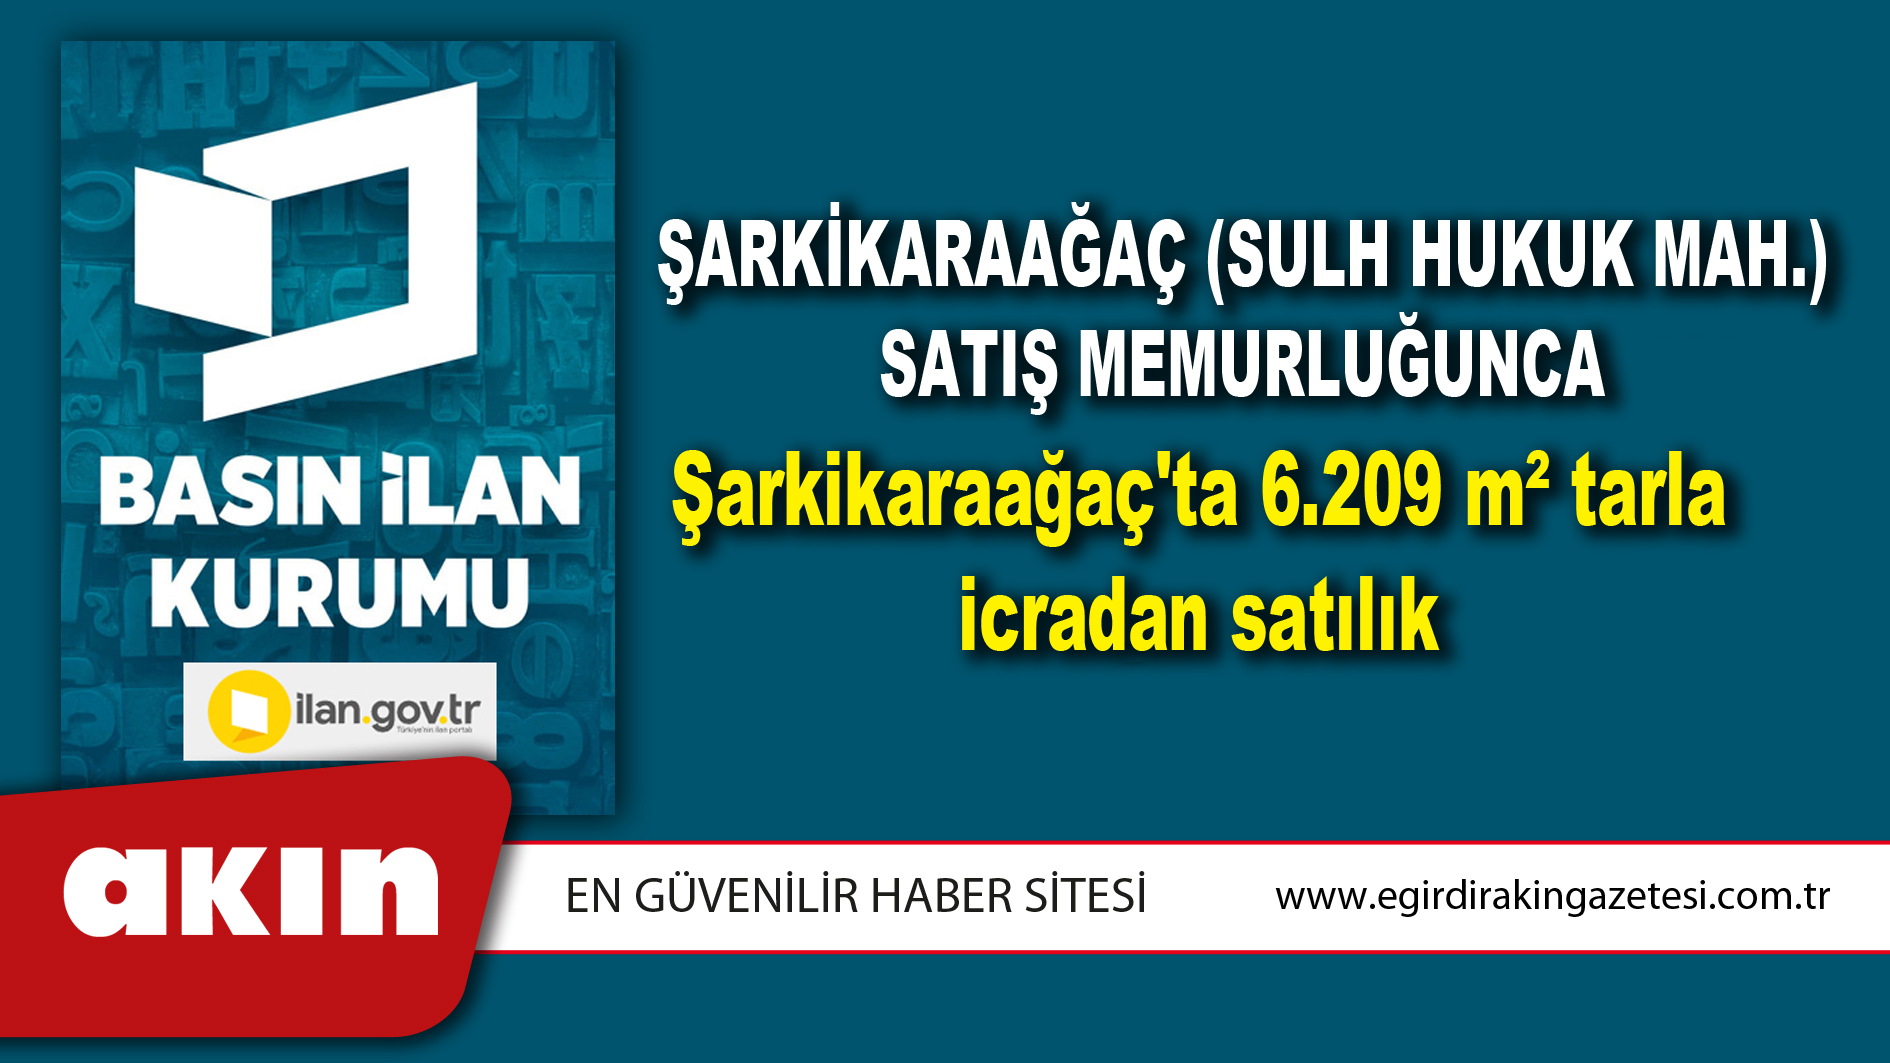 Şarkikaraağaç (Sulh Hukuk Mah.) Satış Memurluğunca Şarkikaraağaç'ta 6.209 m² tarla icradan satılık